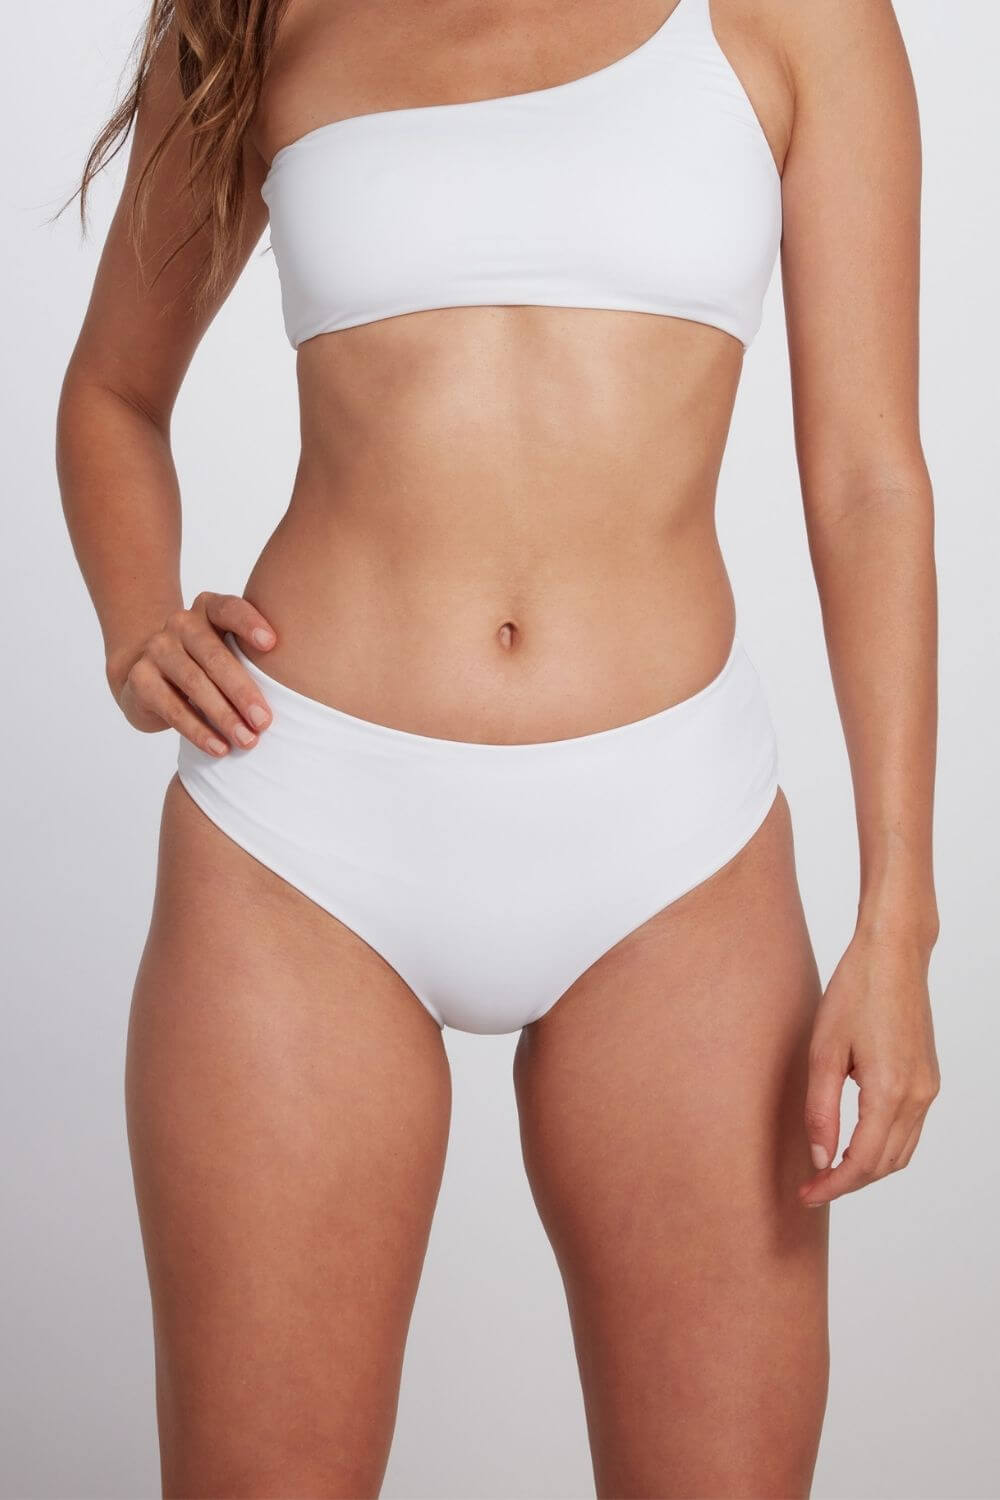 Detail of the Serena white mid rise bikini bottom.